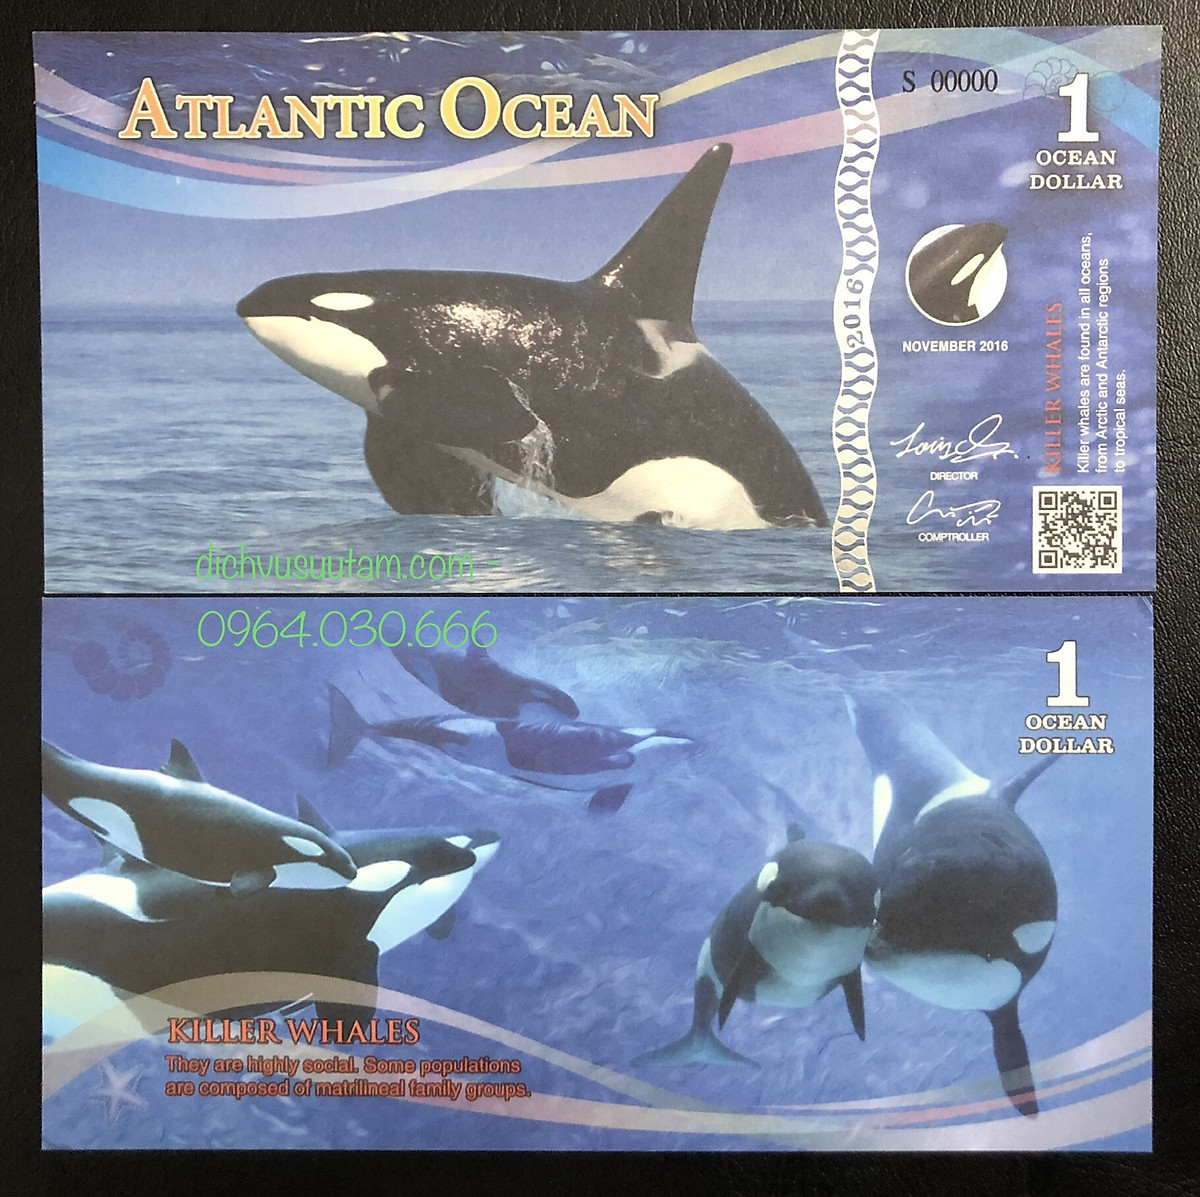 Tiền lưu niệm biên Đại Tây Dương hình ảnh Cá voi đen 1 dollar, có QR